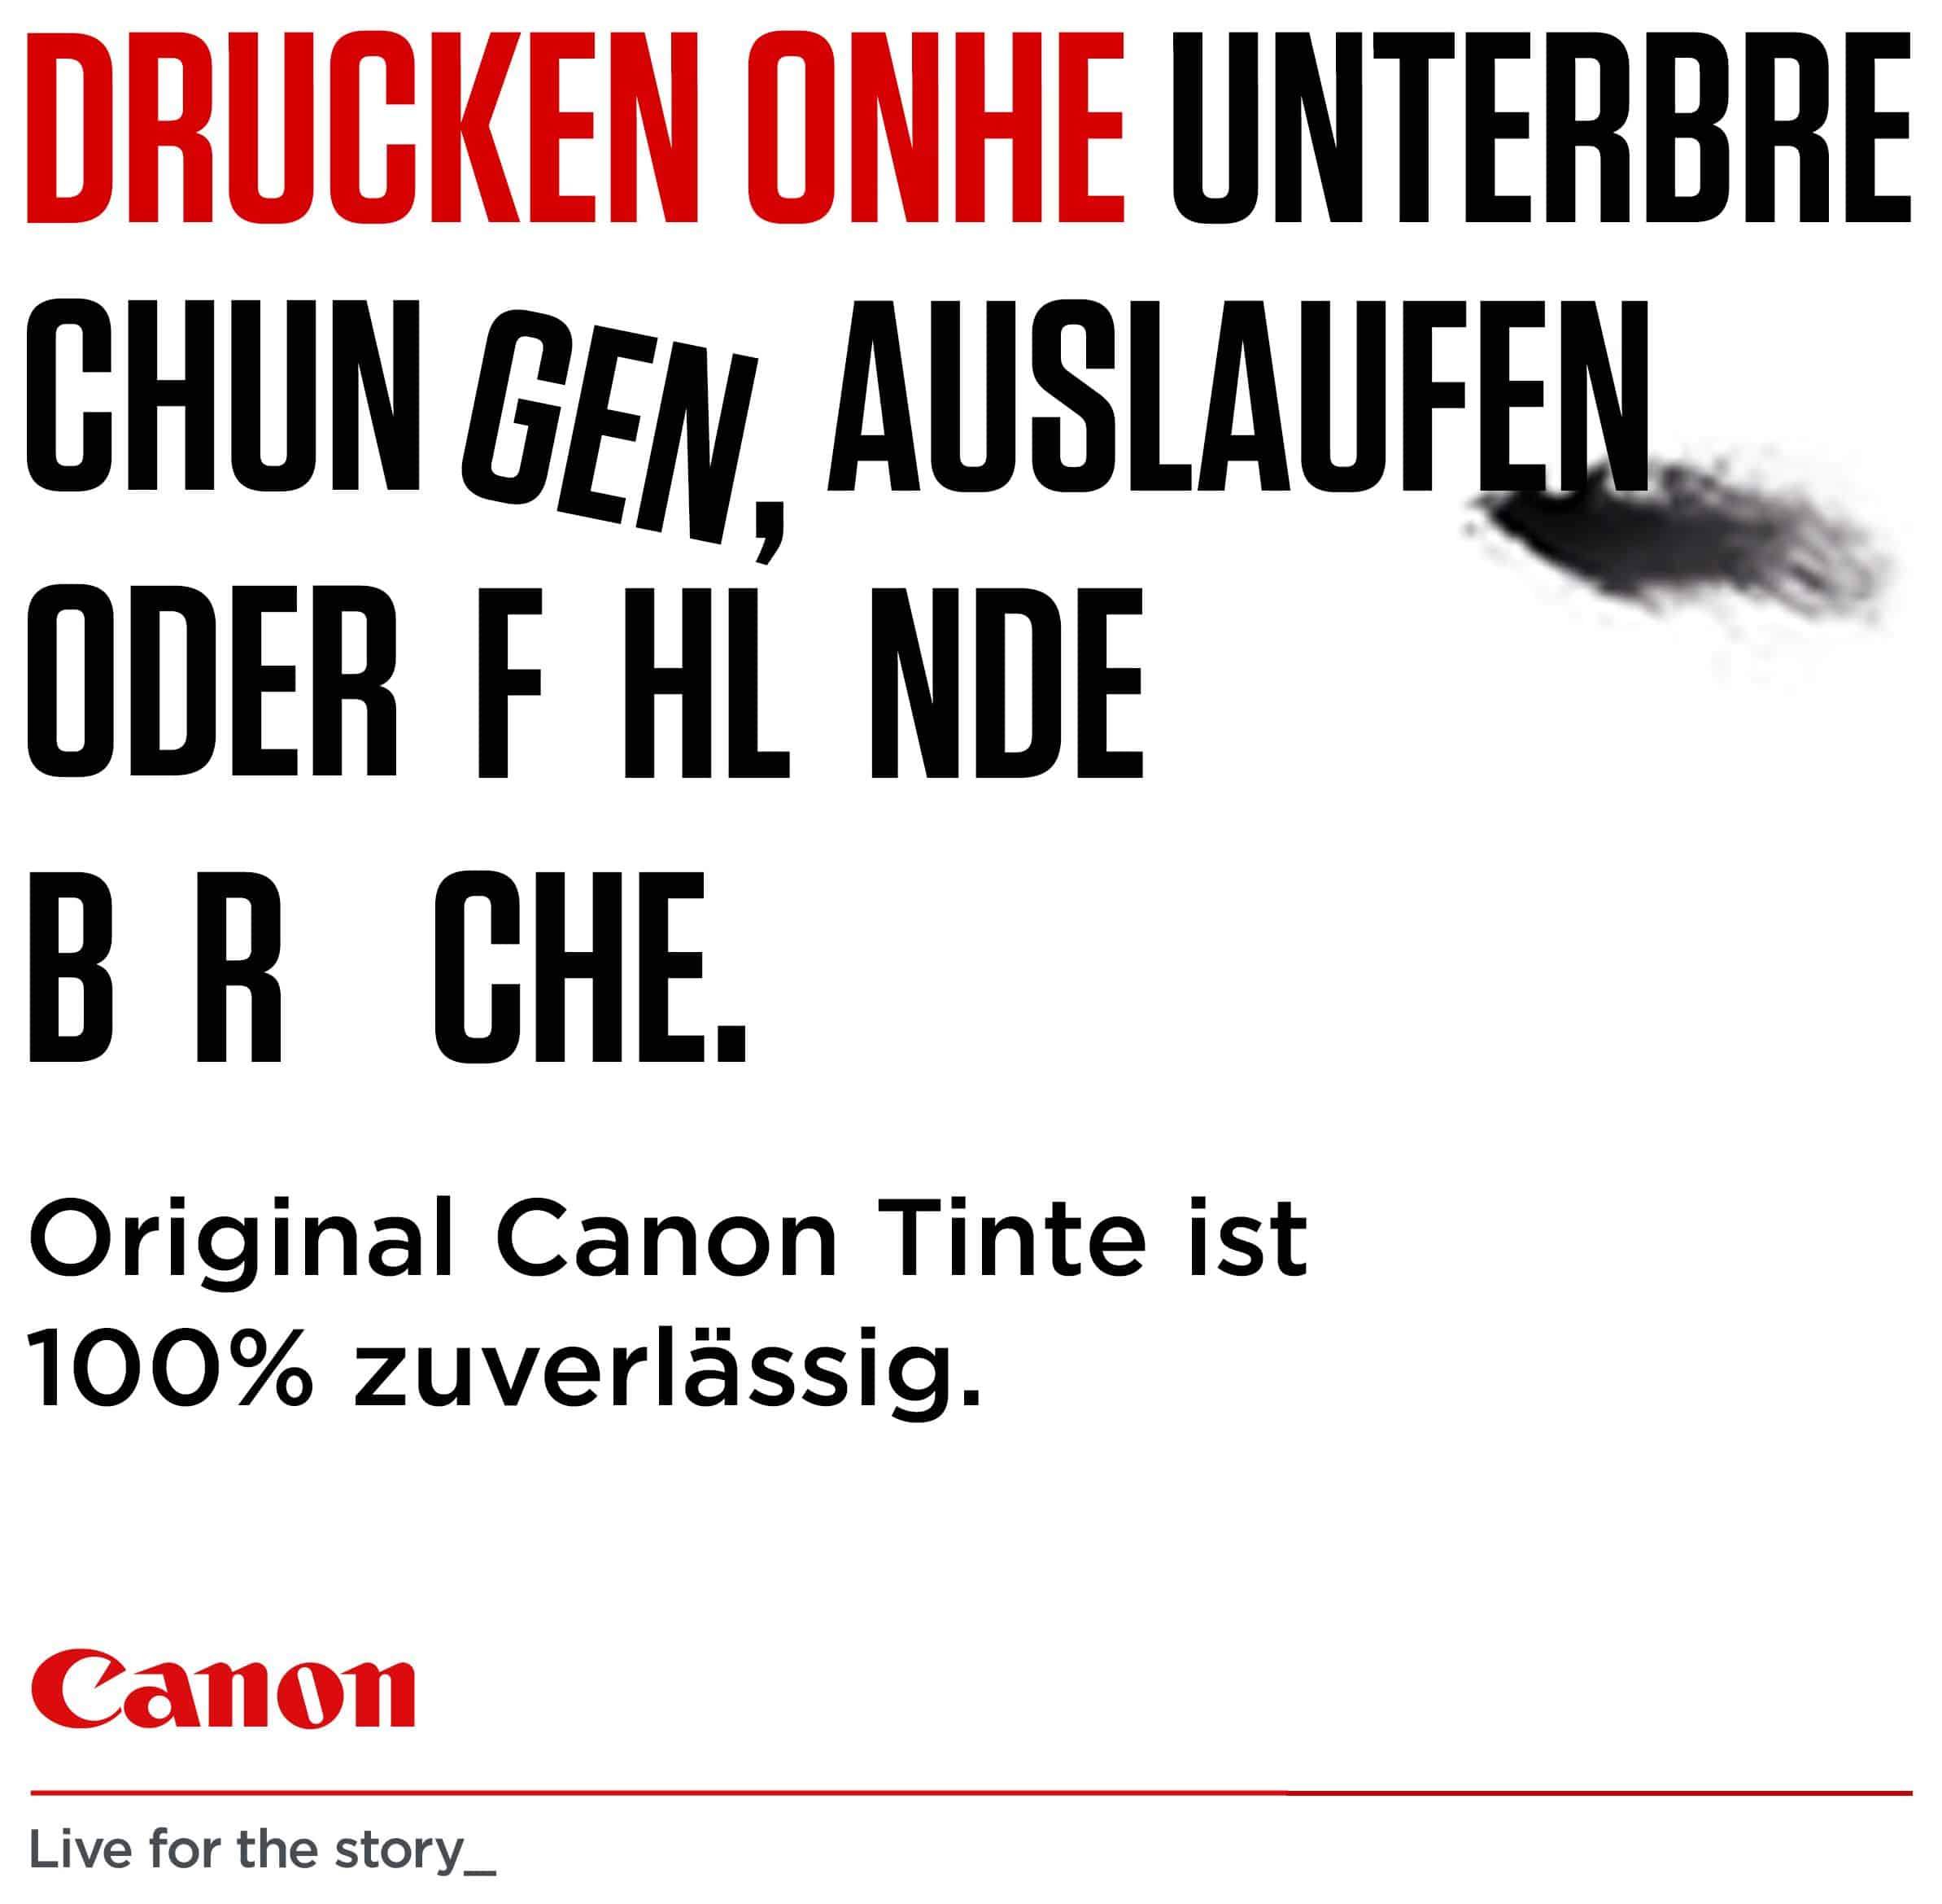 Canon CLI-526 C/M/Y Multipack originale Druckerpatronen Cyan, Magenta, Gelb  von expert Technomarkt